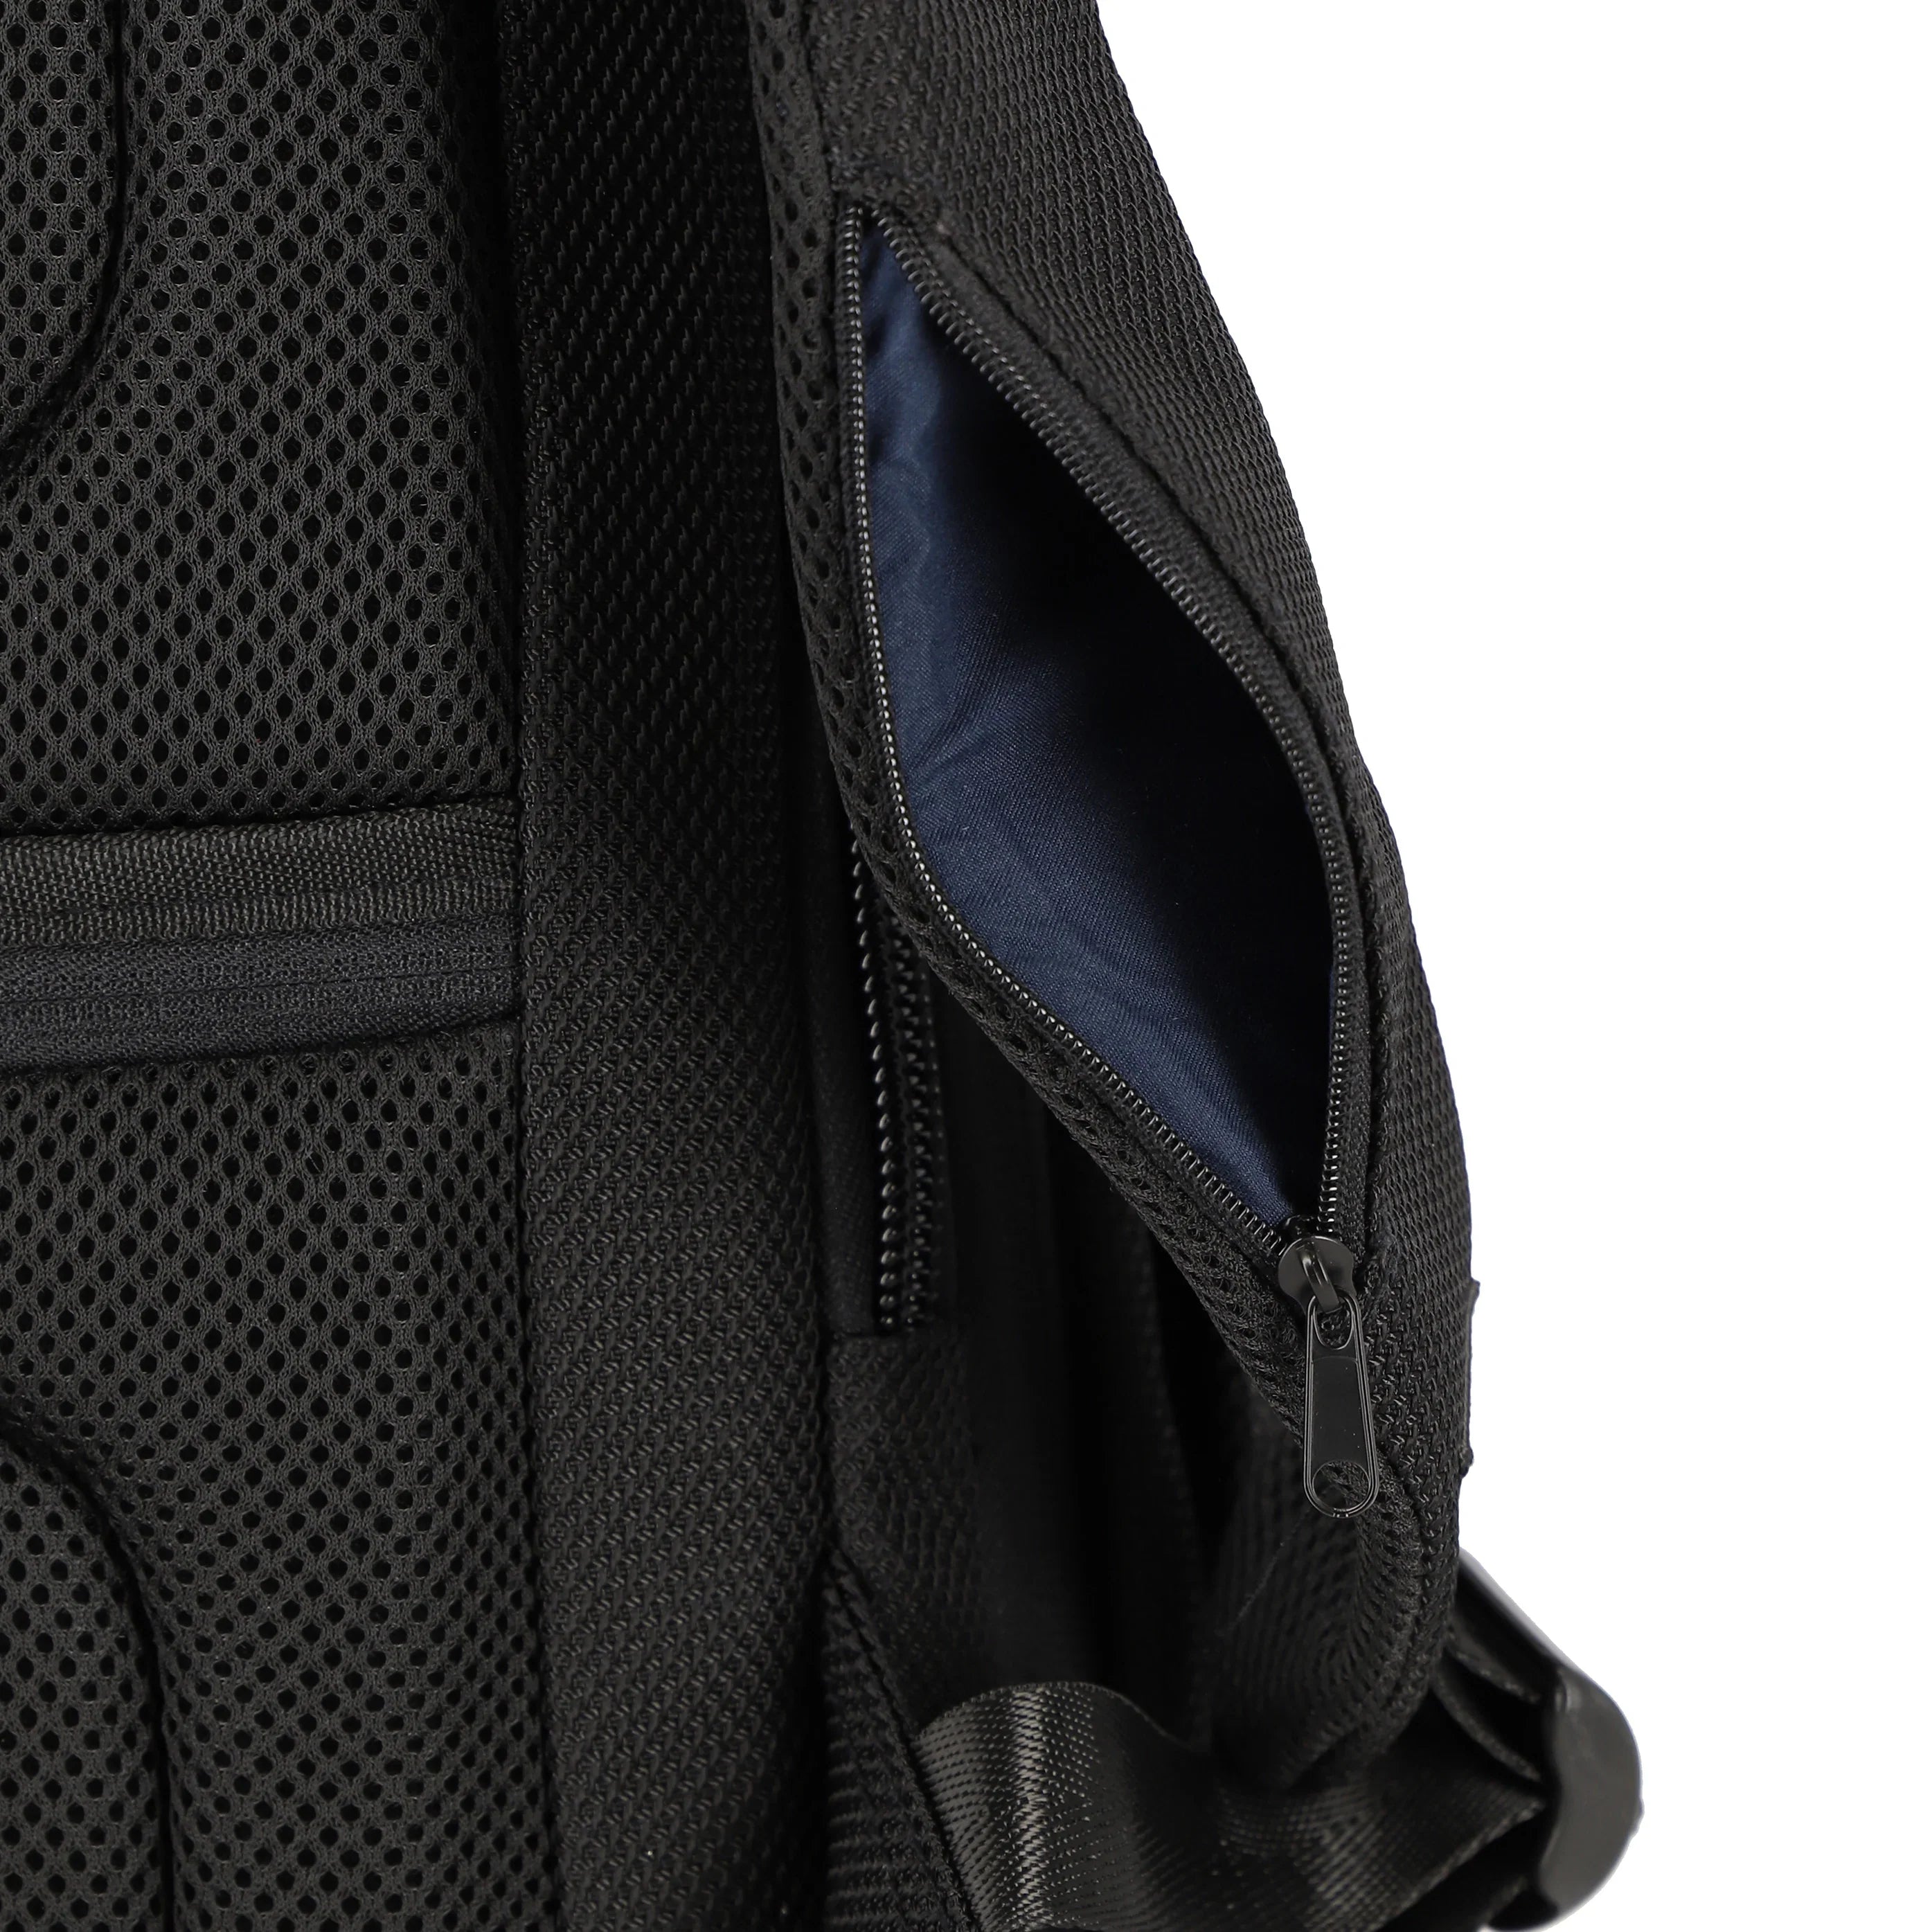 Travelite Meet Backpack 41 cm - Black